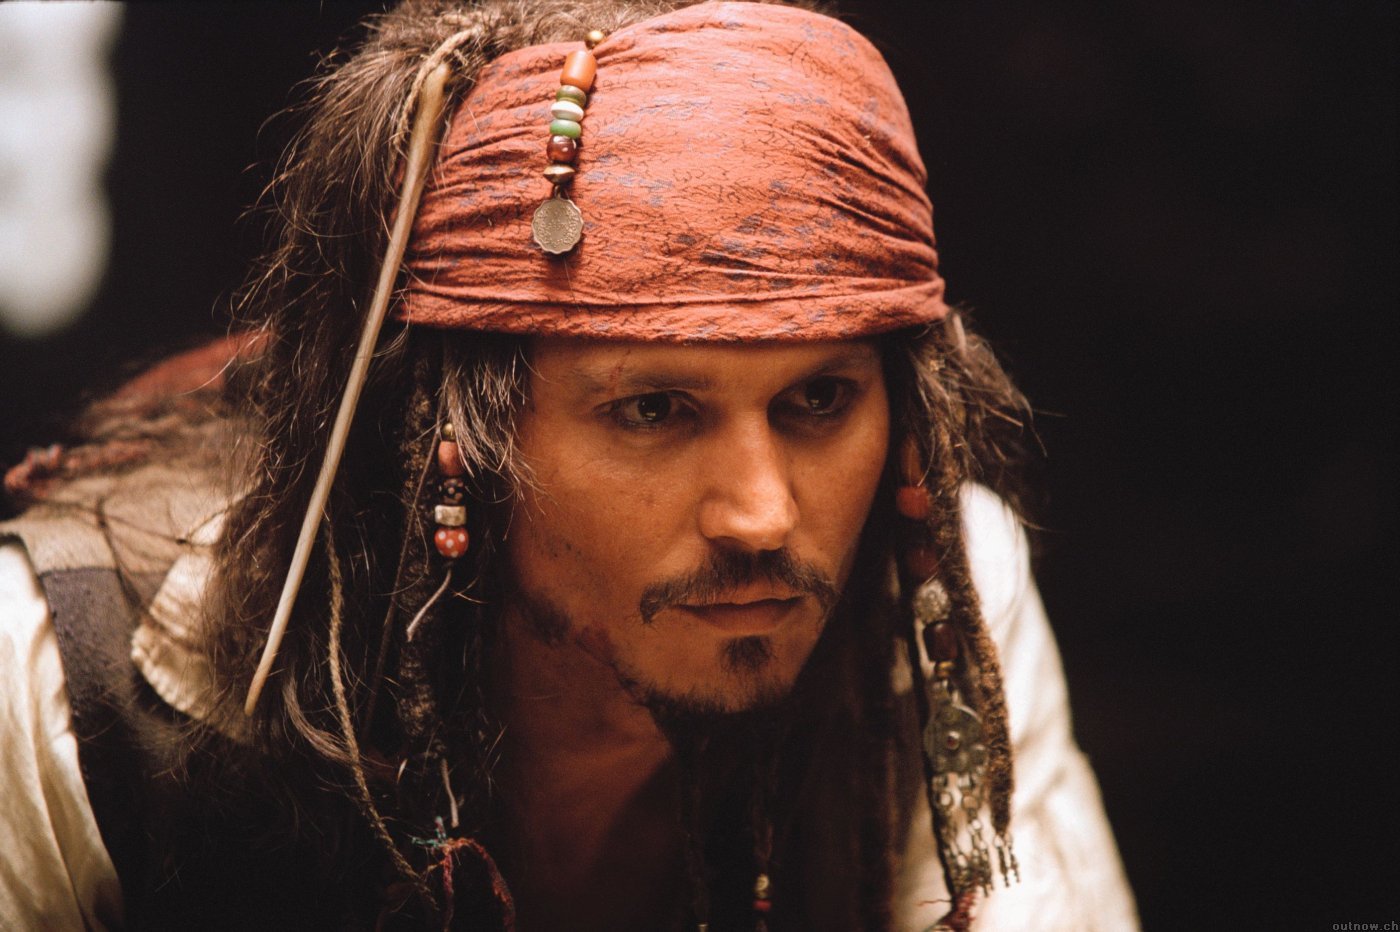 Популярные заставки и фоны Джонни Депп (Johnny Depp) на компьютер